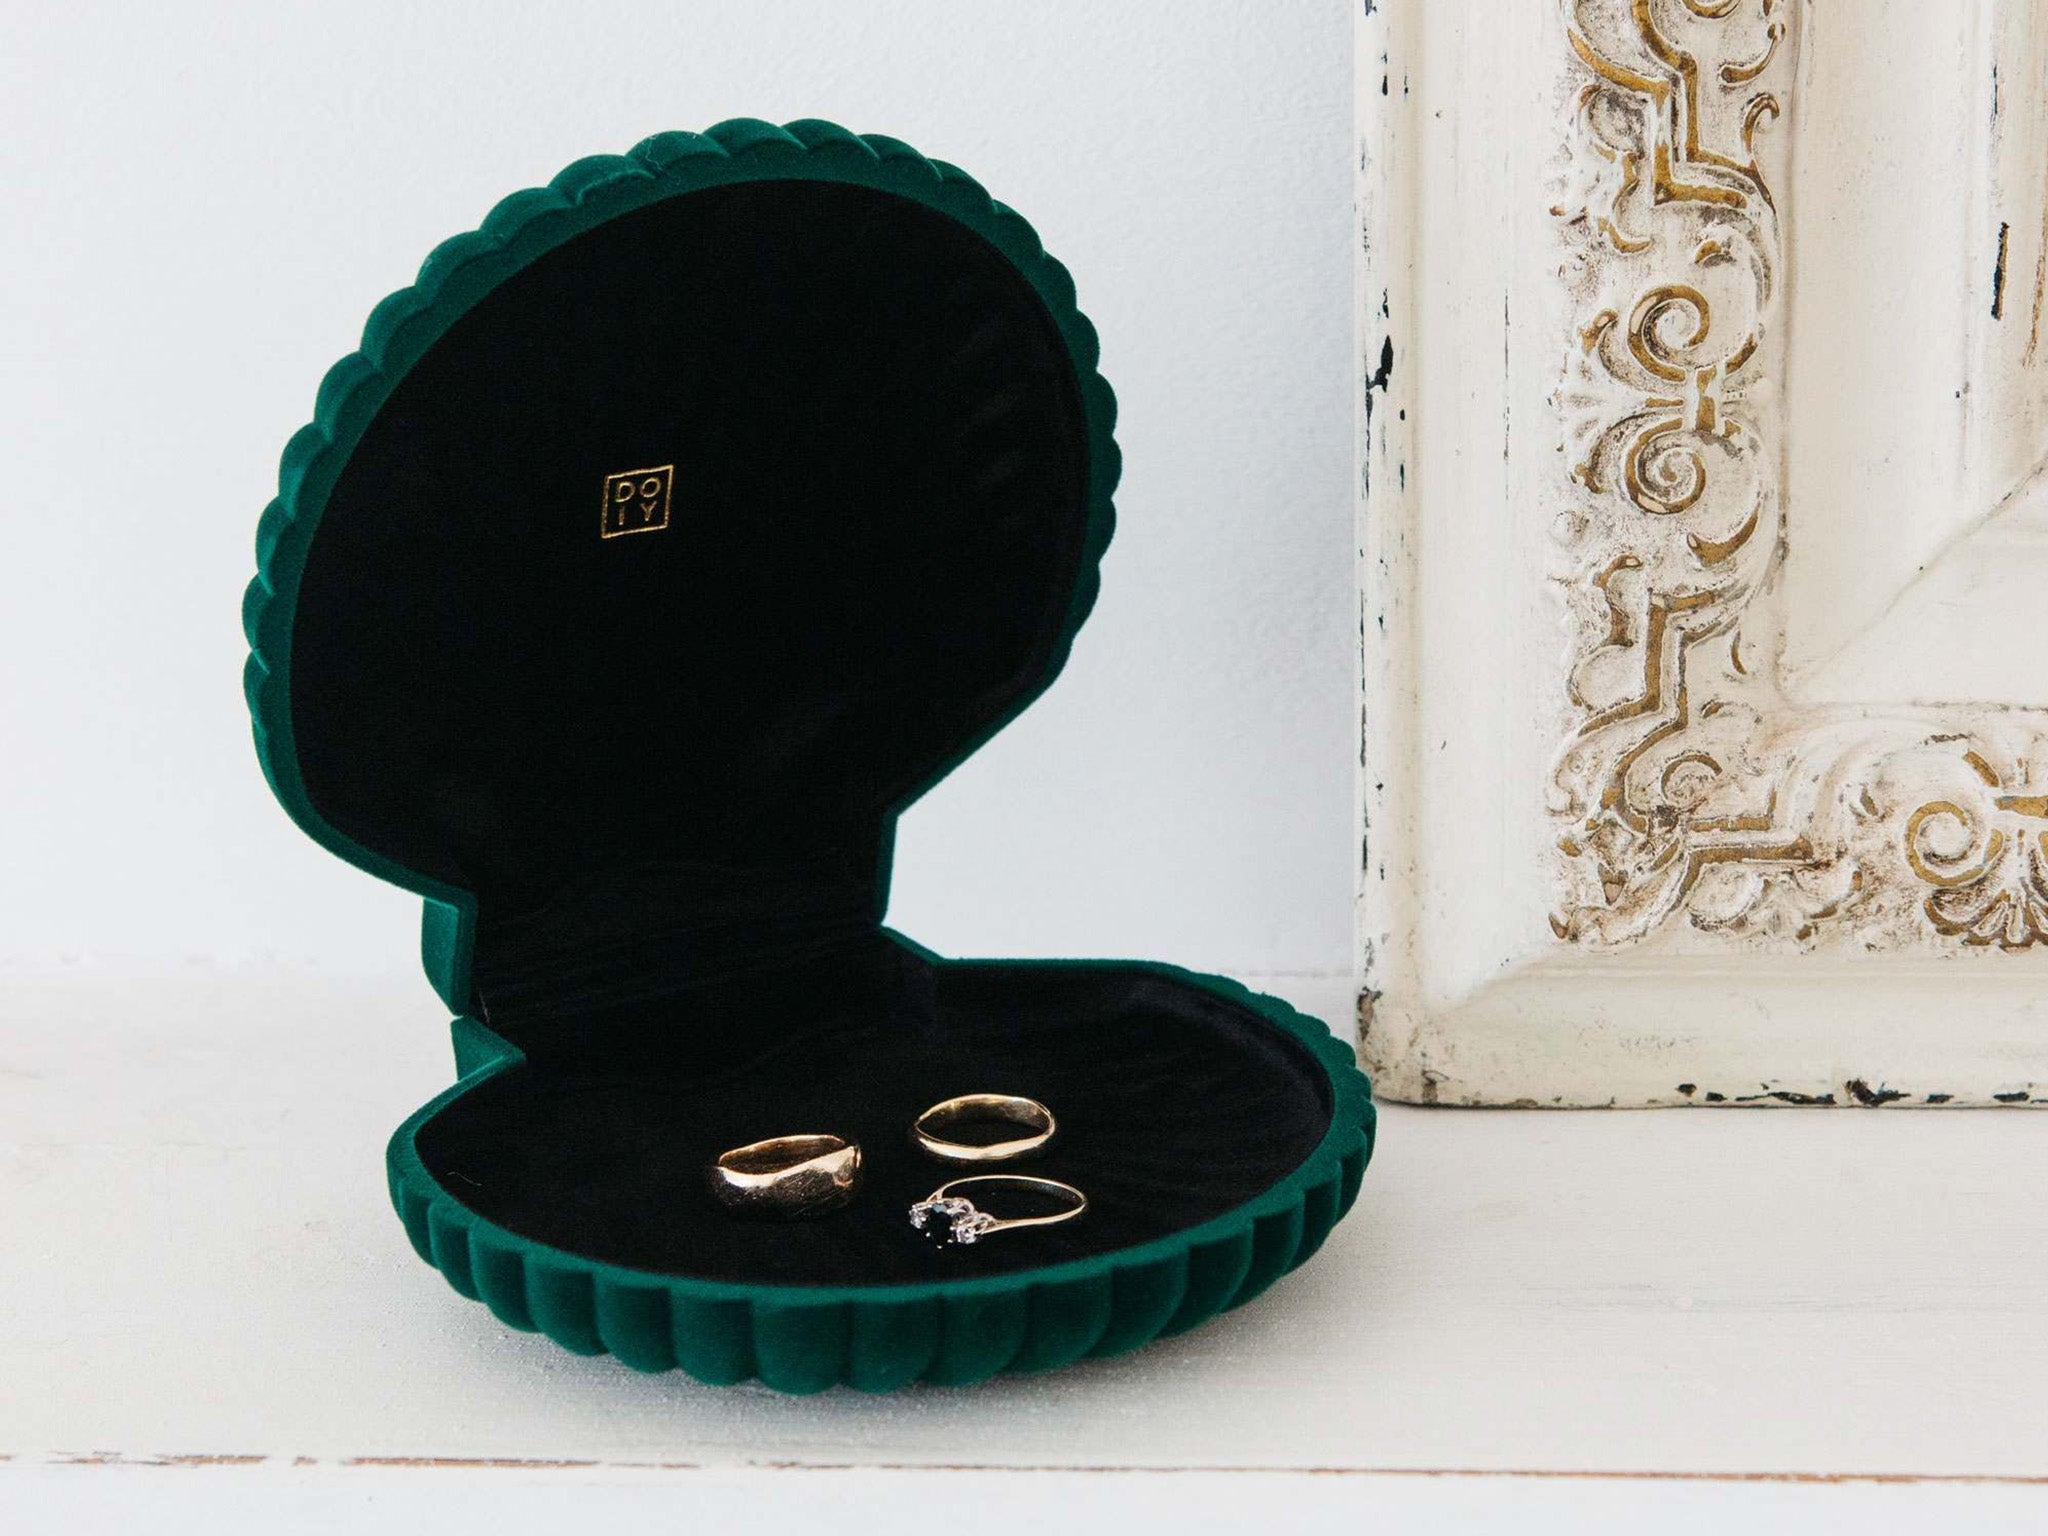 Doiy green shell jewellery box